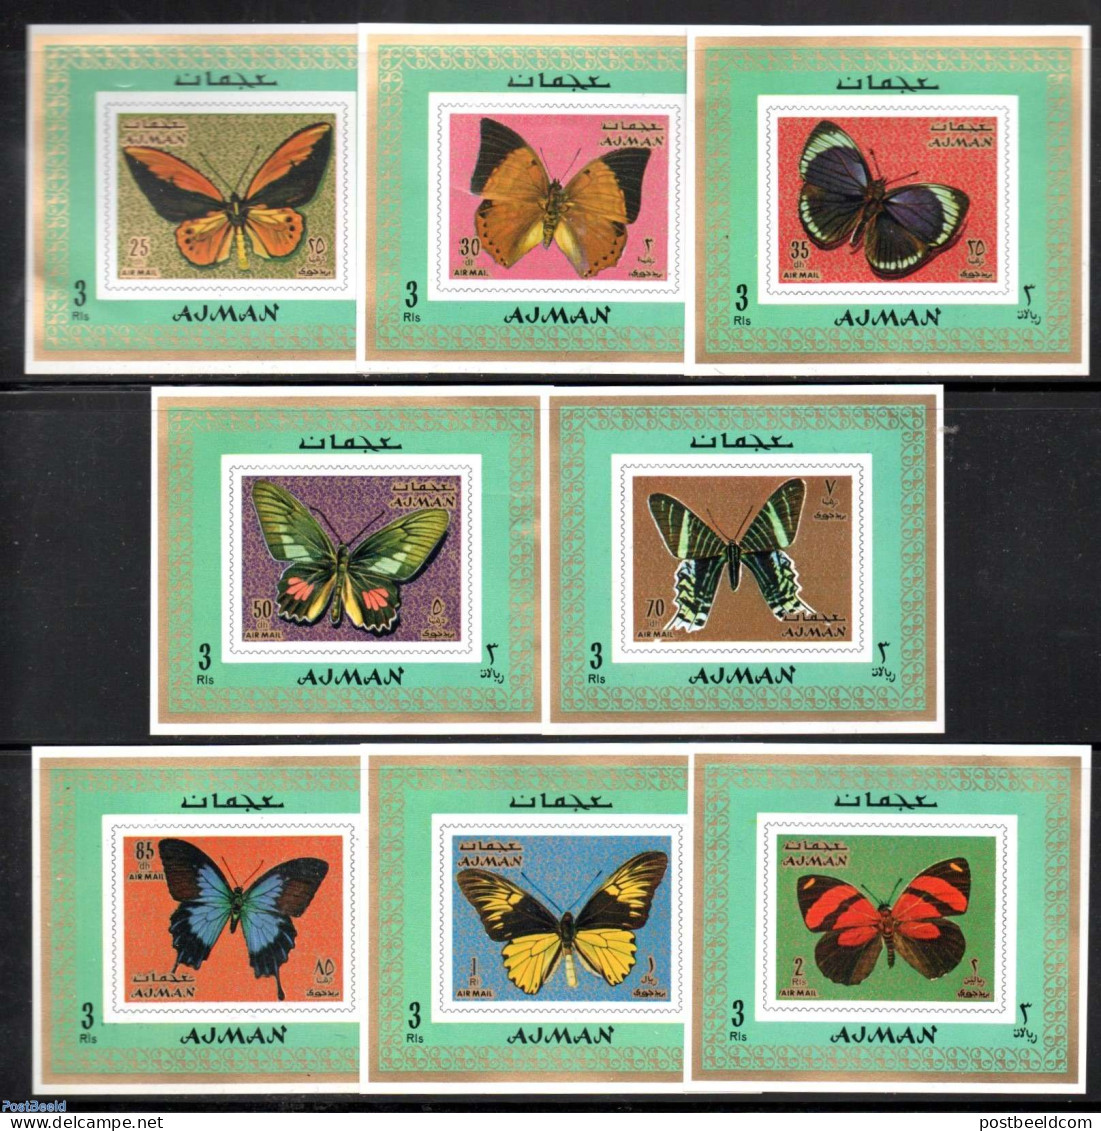 Ajman 1971 Butterflies 8 S/s, Mint NH, Nature - Butterflies - Ajman